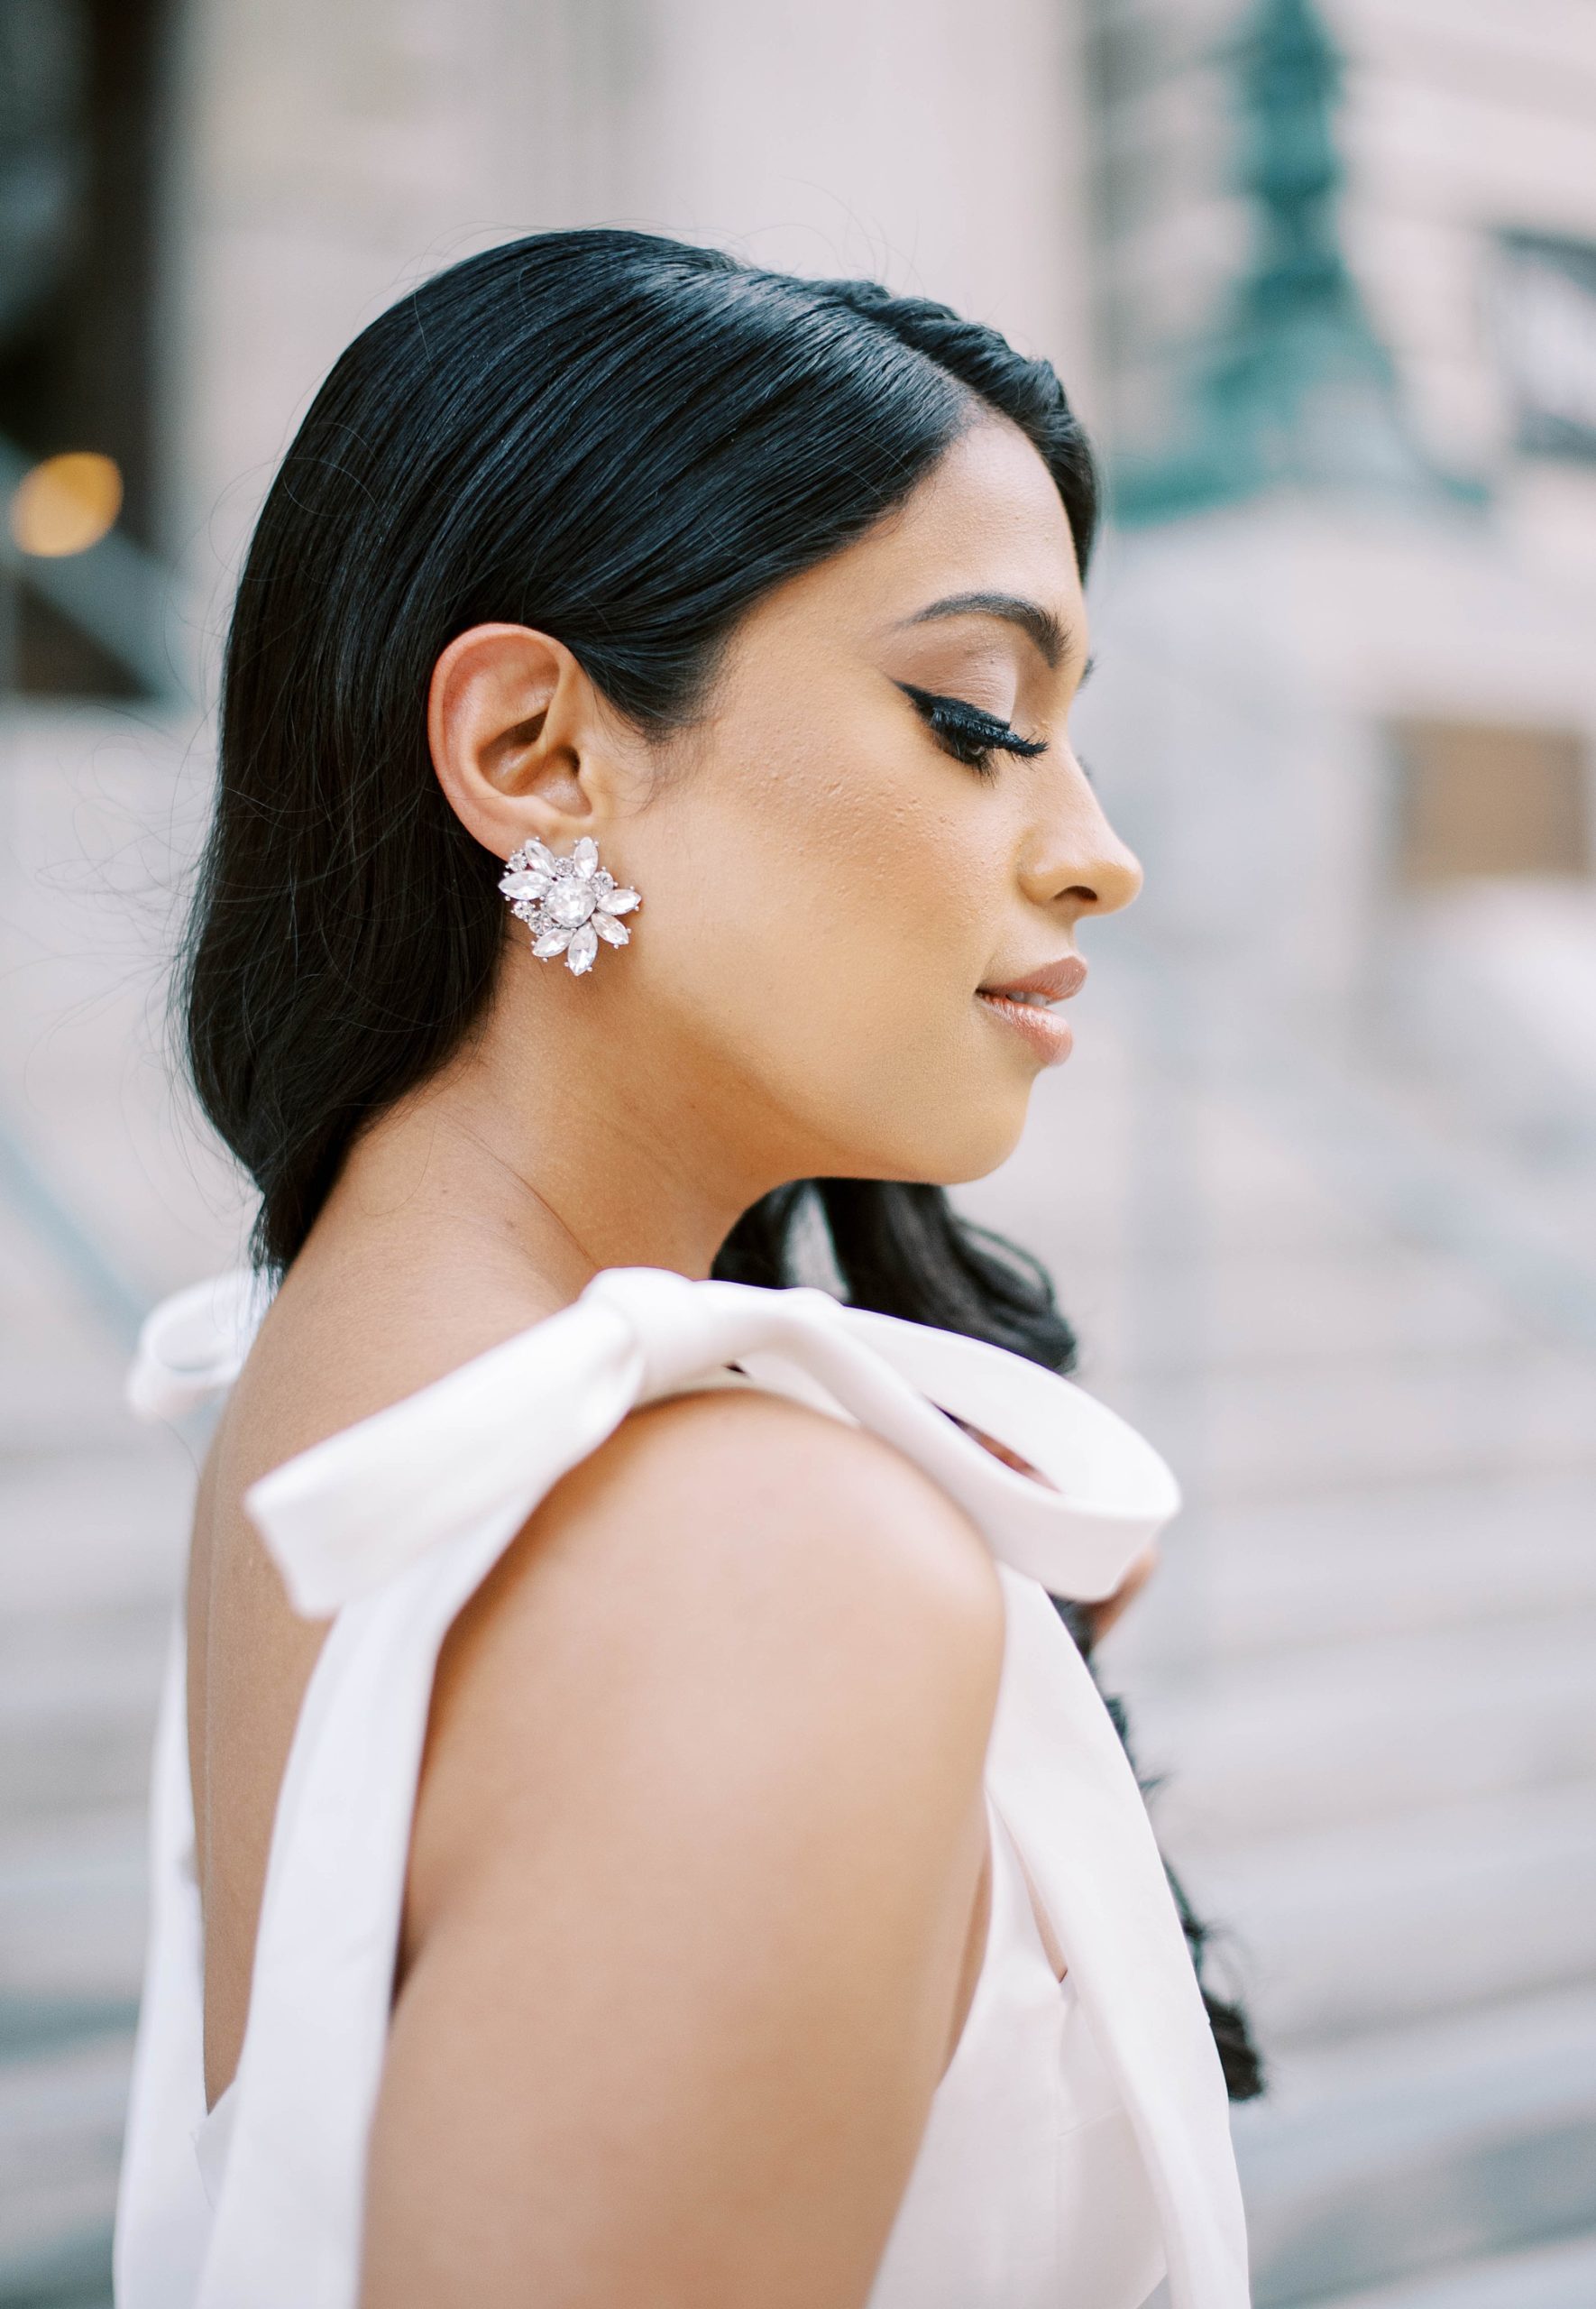 woman looks down showing off earrings 